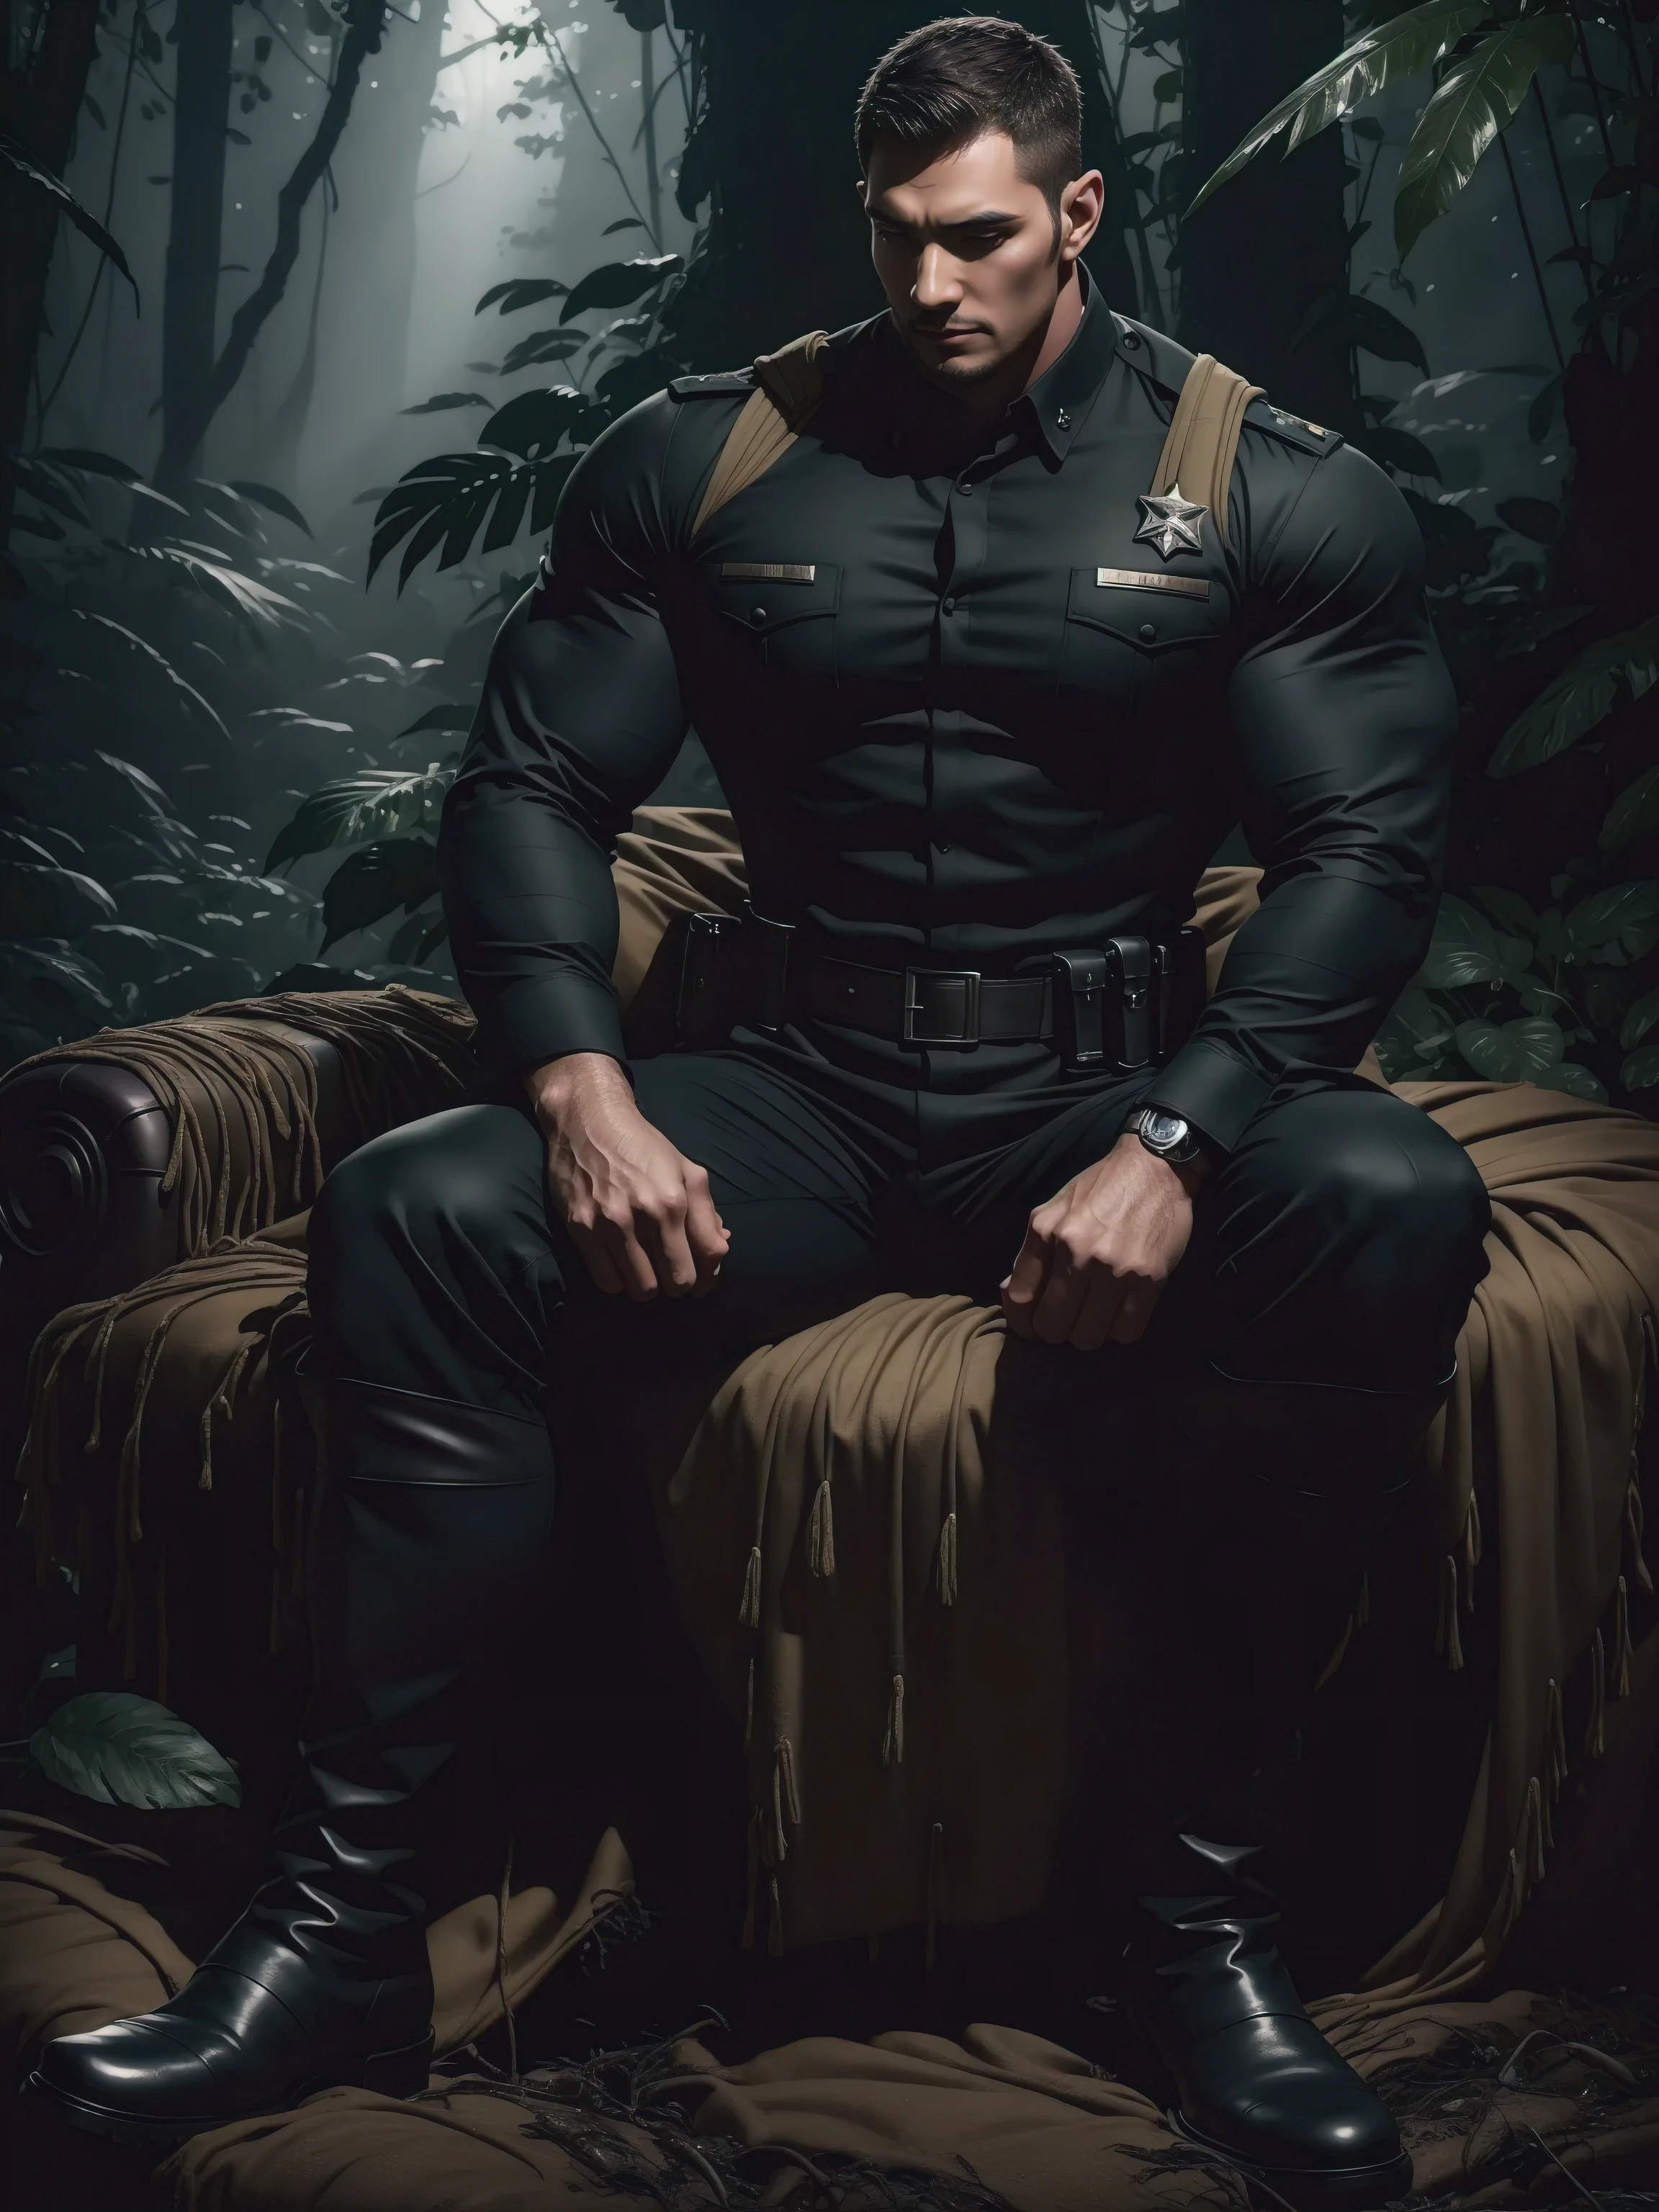 키가 크고 근육질의 남자가 숲에 앉아 있다，진한 검정색 군복，캐릭터 디자인（Resident Evil - 크리스 레드필드，크리스 레드필드）헤어스타일은 크루컷이에요，身穿진한 검정색 군복，매트한 질감，푹신하고 편안한 소파，으스스한 사탕수수 정글에 앉아, 두꺼운 등나무로 몸을 감싸고 있어요，슬픈 표정，깊고 매력적인 눈，사파이어 눈의 남자 주인공，영웅적인 남성 포즈，키가 크고 건장하다，근육질의！매력적인 다리 근육，키가 큰, 억센, 그리고 강하다， 身穿진한 검정색 군복， 슈퍼 게인과 쿨함， 고해상도 커미션， 검은색 부츠를 신은 큰 발，매력적인 강한 남자，밝은 햇빛이 몸을 비춘다，반짝이는 질감을 지닌 매트한 입자